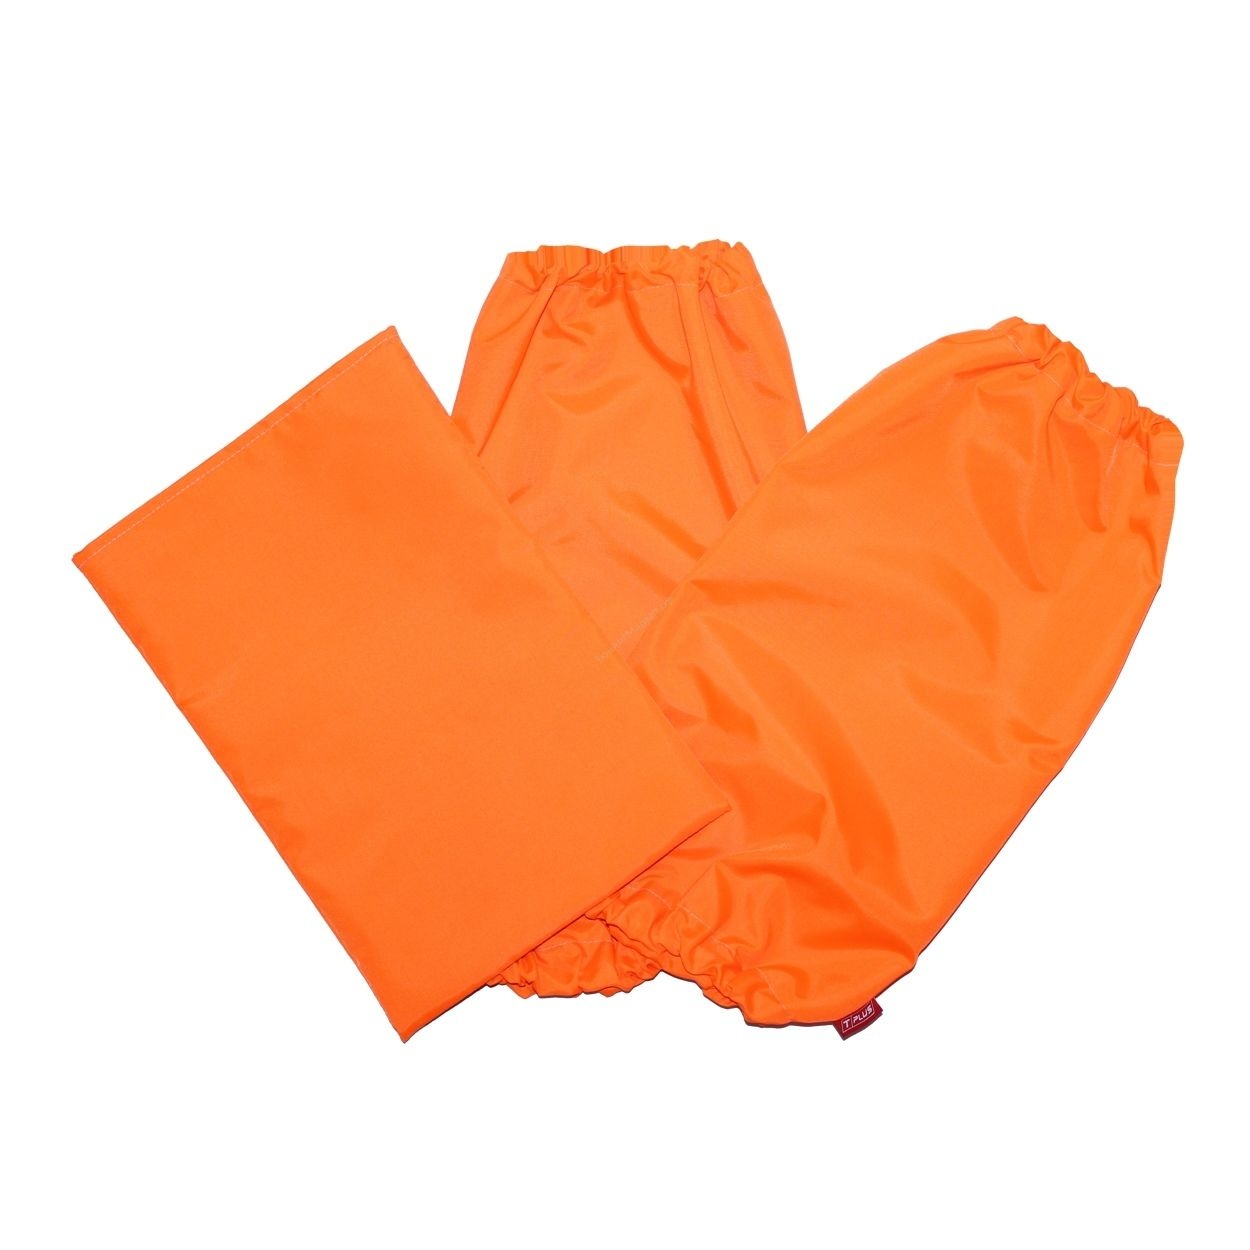 Нарукавники и коврик-мешок под колени (Оранжевый) "T-plus"